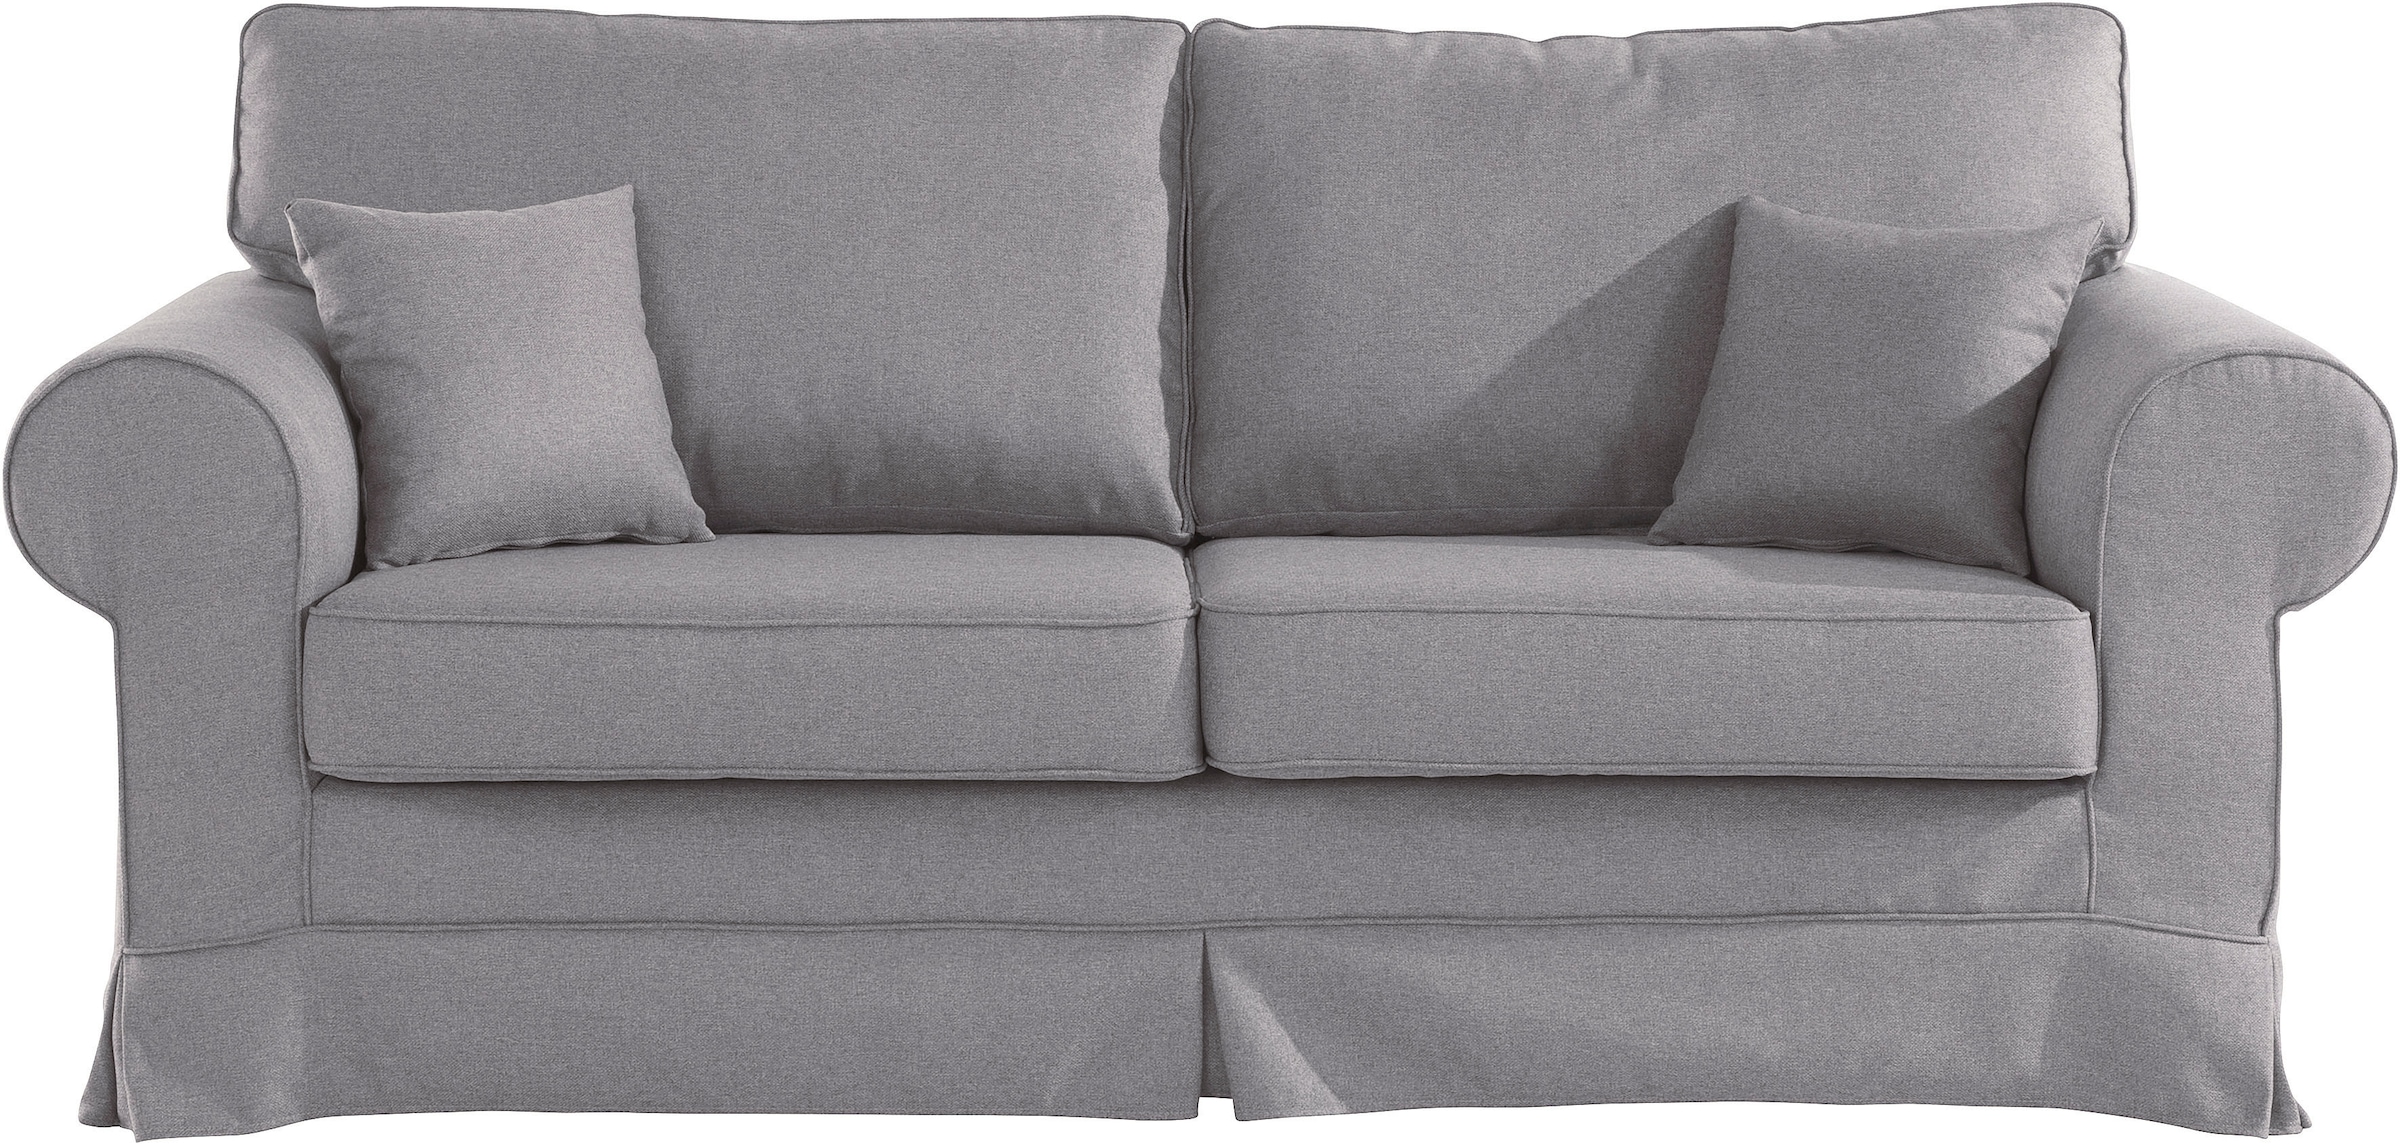 3-Sitzer-Sofa online kaufen bei Ackermann